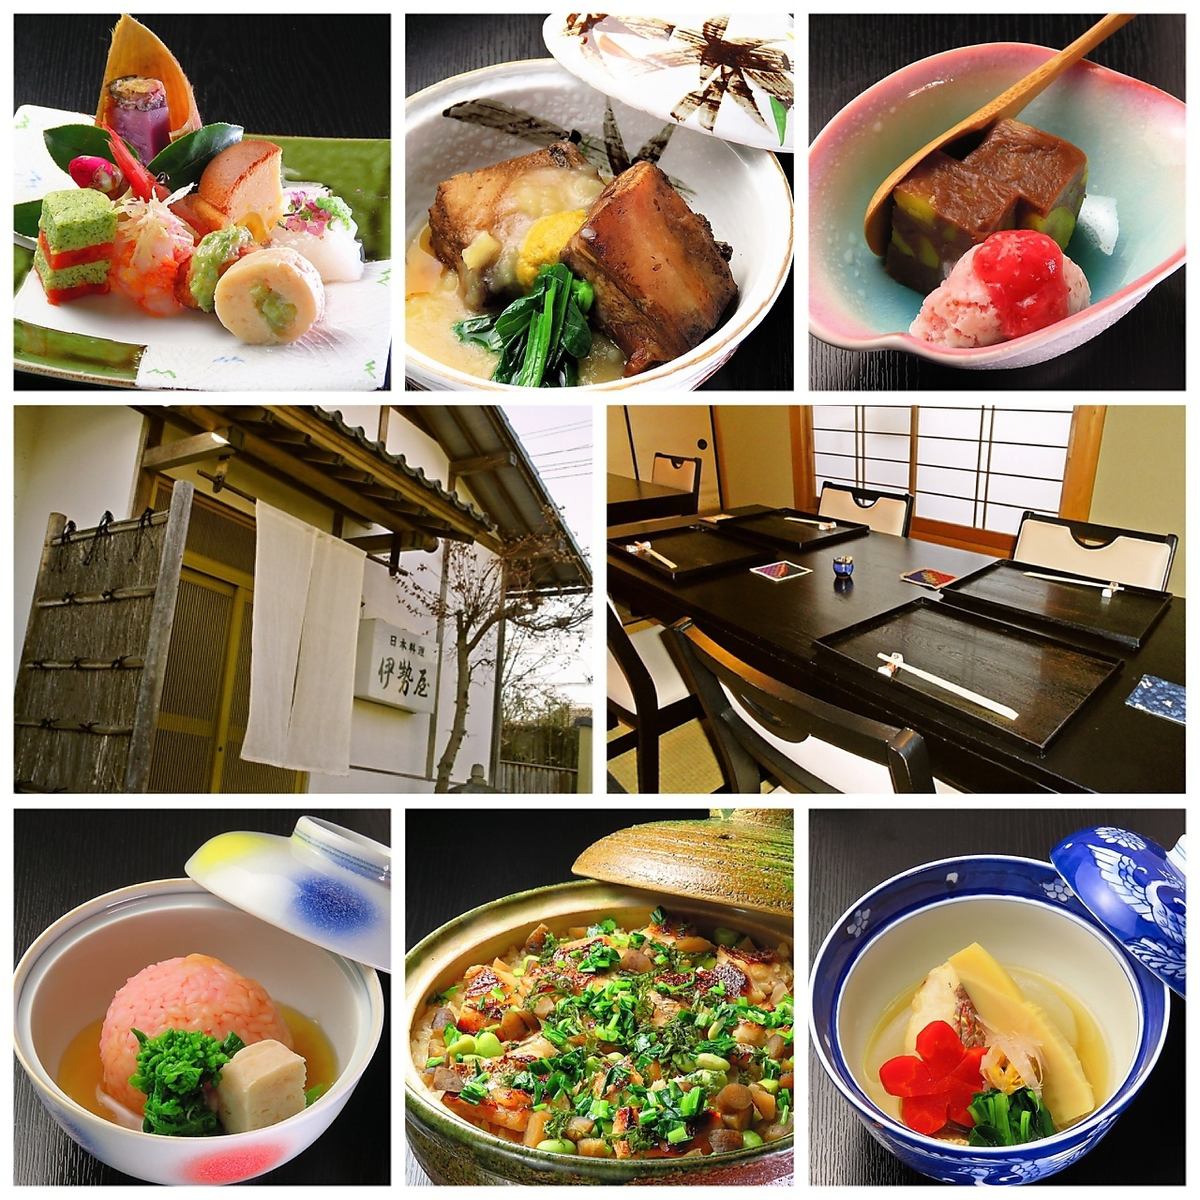 這是一家正宗的懷石料理/日本餐廳，使用天然食材，由接受過正宗京都料理培訓的店主烹製。